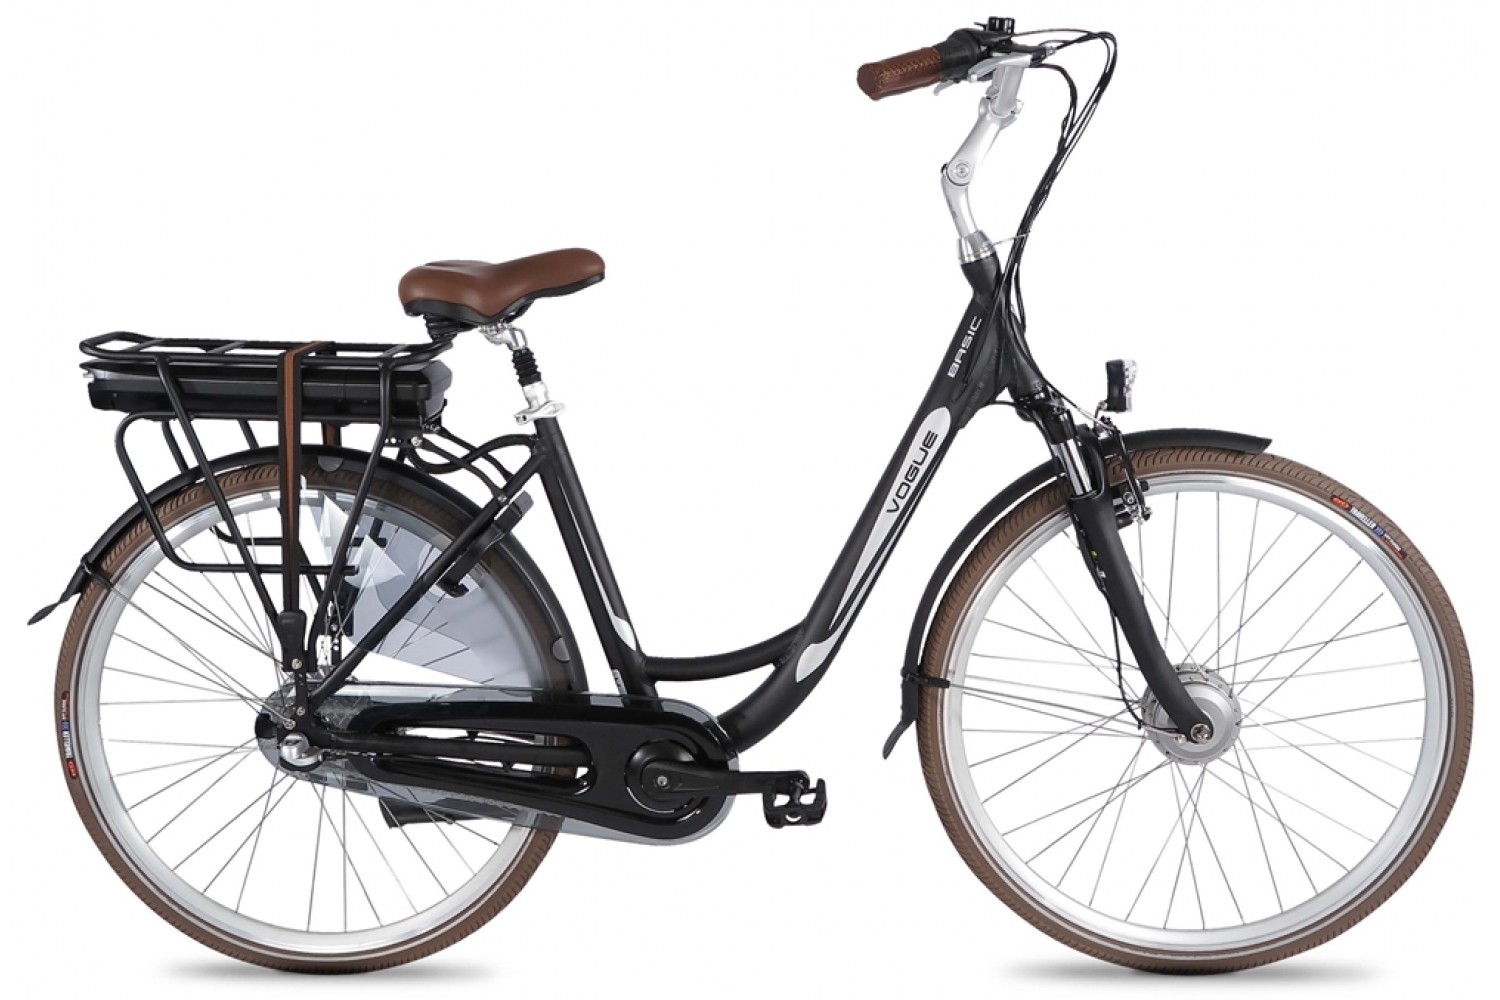 Overgave gewoon premie Vogue Basic Elektrische Fiets N3 28 inch Zwart Bruin | 899,- Euro |  City-Bikes.nl